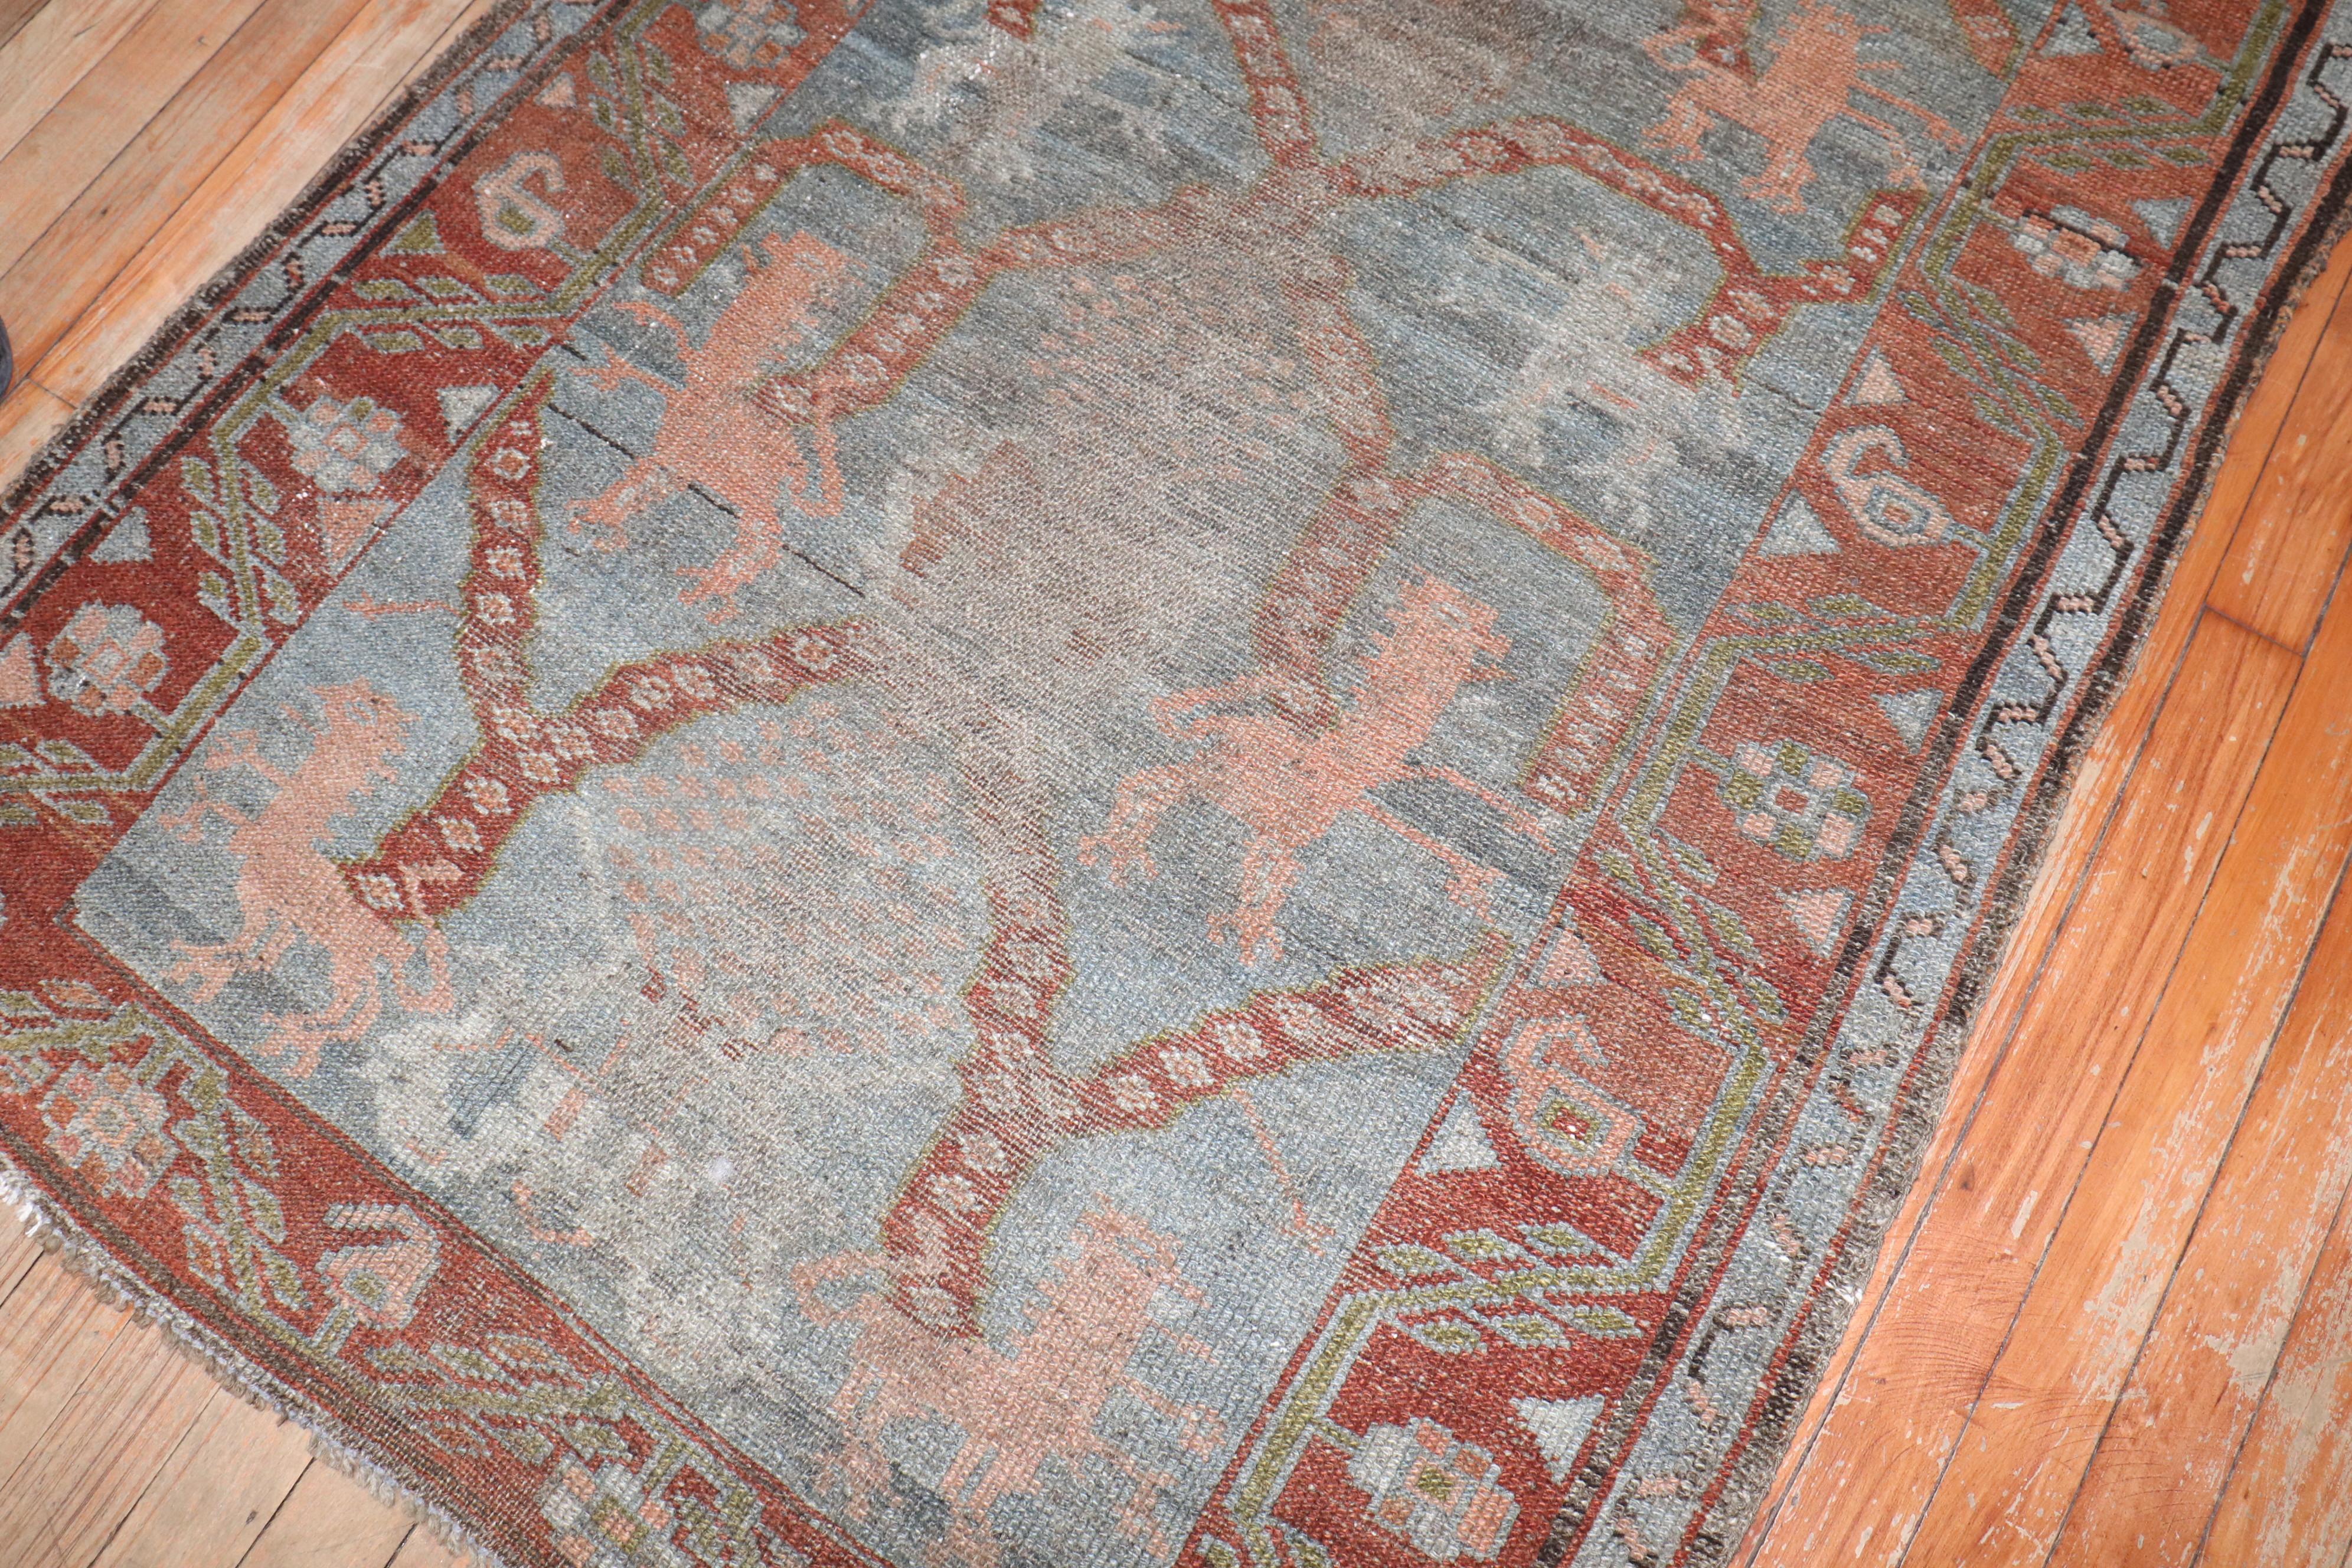 Ein kurdisch-persischer Bidjar-Teppich aus dem späten 19. Jahrhundert mit einem Löwenmuster

Maße: 3'3